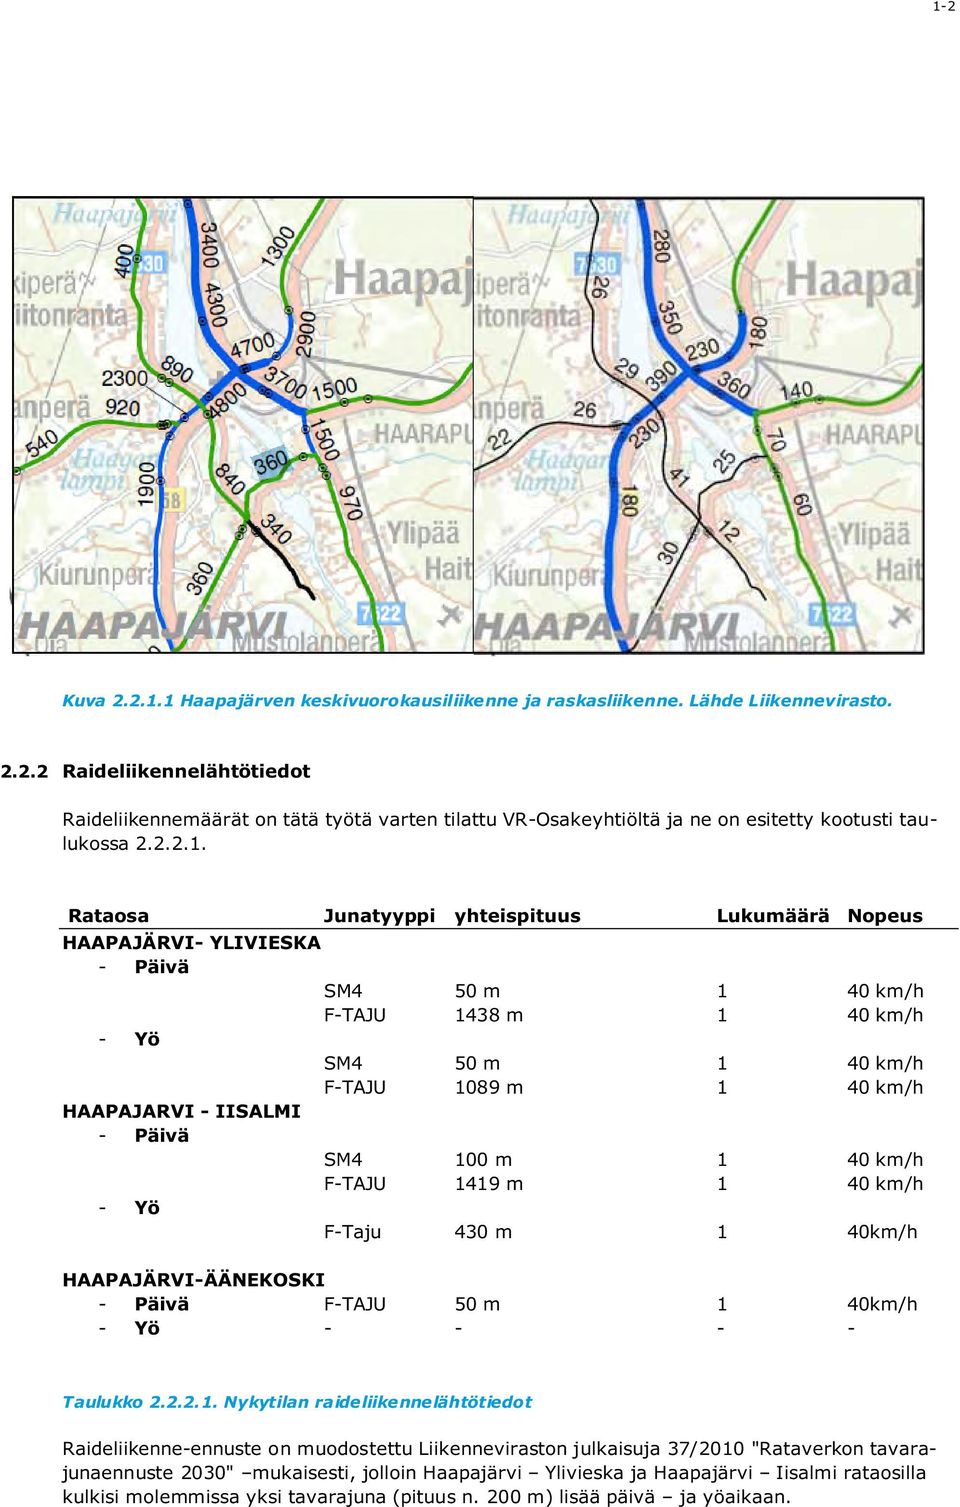 Rataosa Junatyyppi yhteispituus Lukumäärä Nopeus HAAPAJÄRVI- YLIVIESKA - Päivä SM4 50 m 1 40 km/h F-TAJU 1438 m 1 40 km/h - Yö SM4 50 m 1 40 km/h F-TAJU 1089 m 1 40 km/h HAAPAJARVI - IISALMI - Päivä